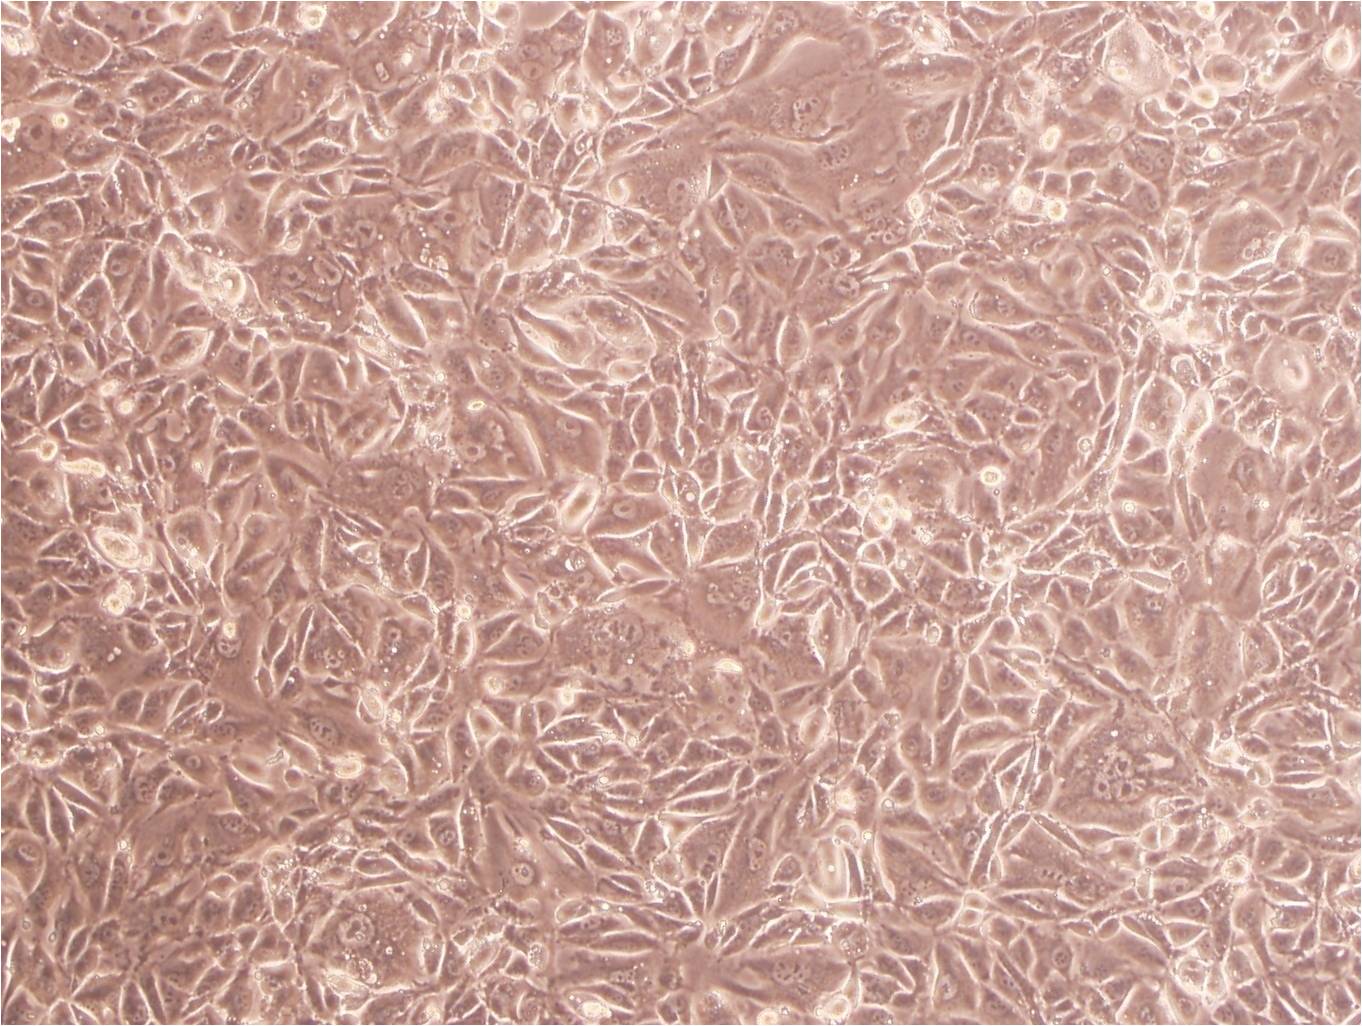 EC-GI-10:人食管鳞状细胞癌复苏细胞(提供STR鉴定图谱)